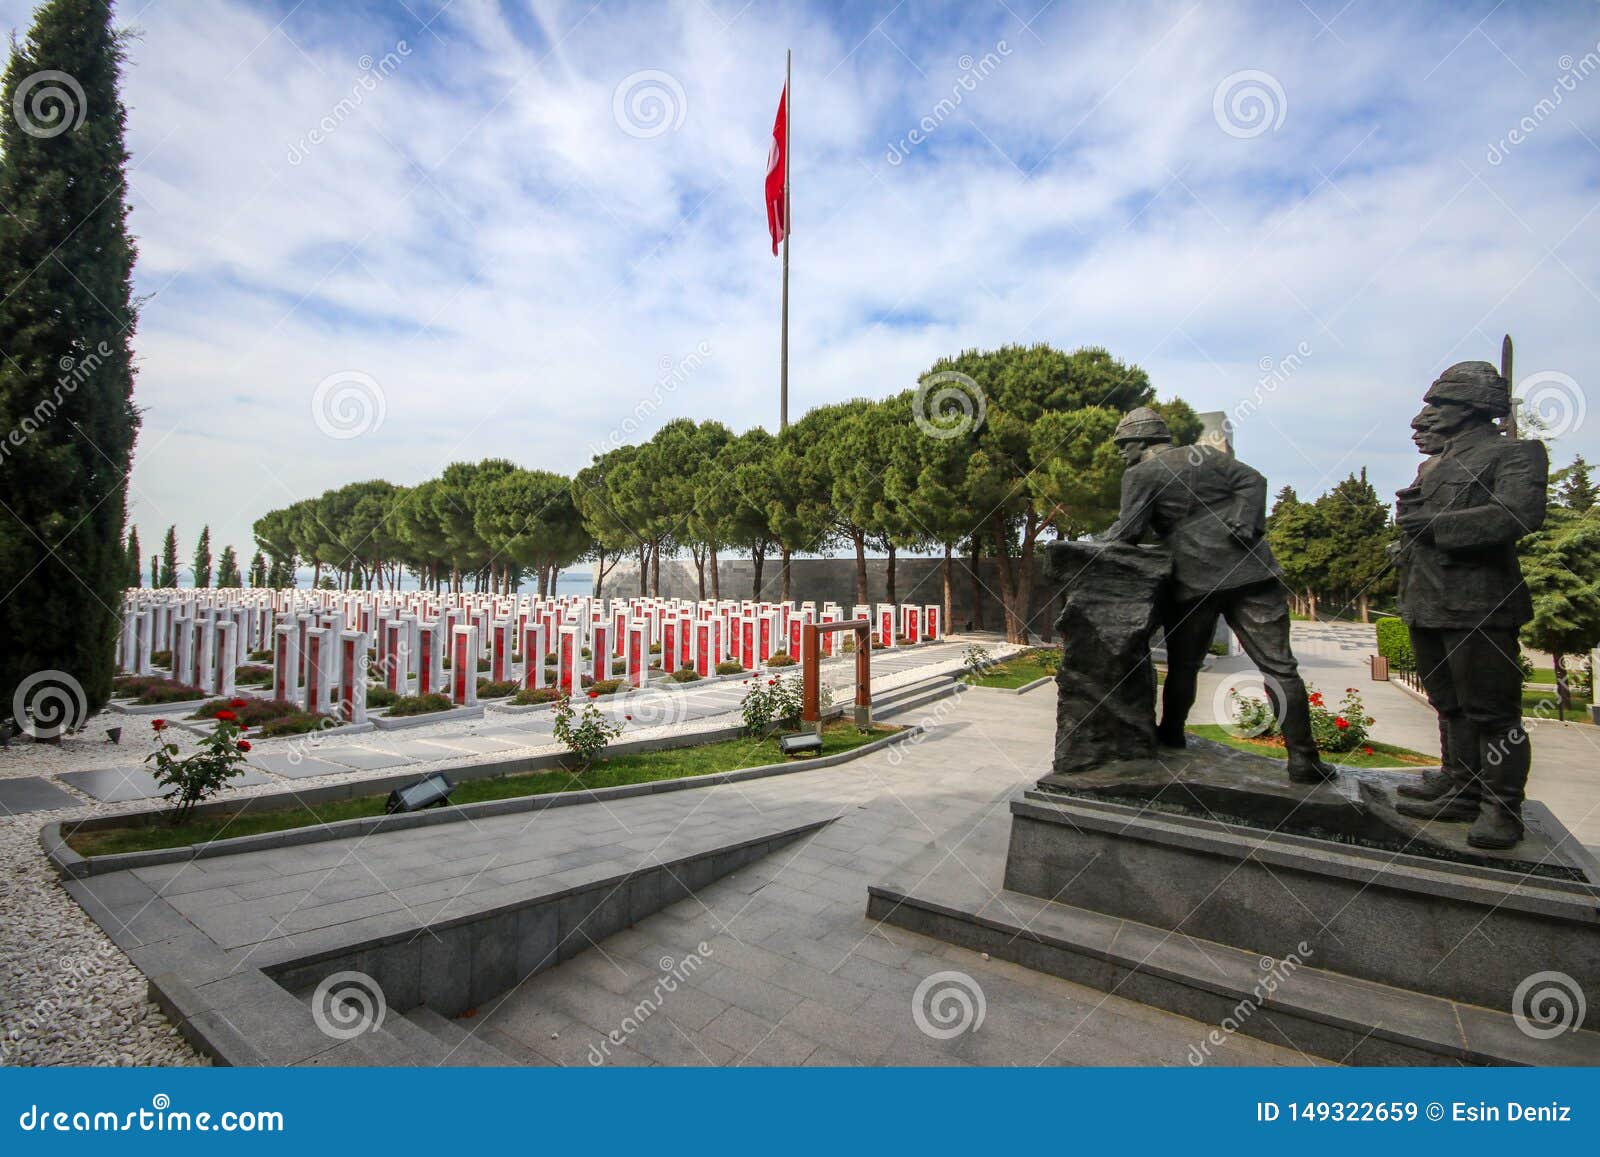 Canakkale, Turquie - 26 mai 2019 : Le cimetière militaire commémoratif de martyres de Canakkale est un mémorial de guerre commémorant le service des soldats environ turcs qui ont participé à la bataille de Gallipoli